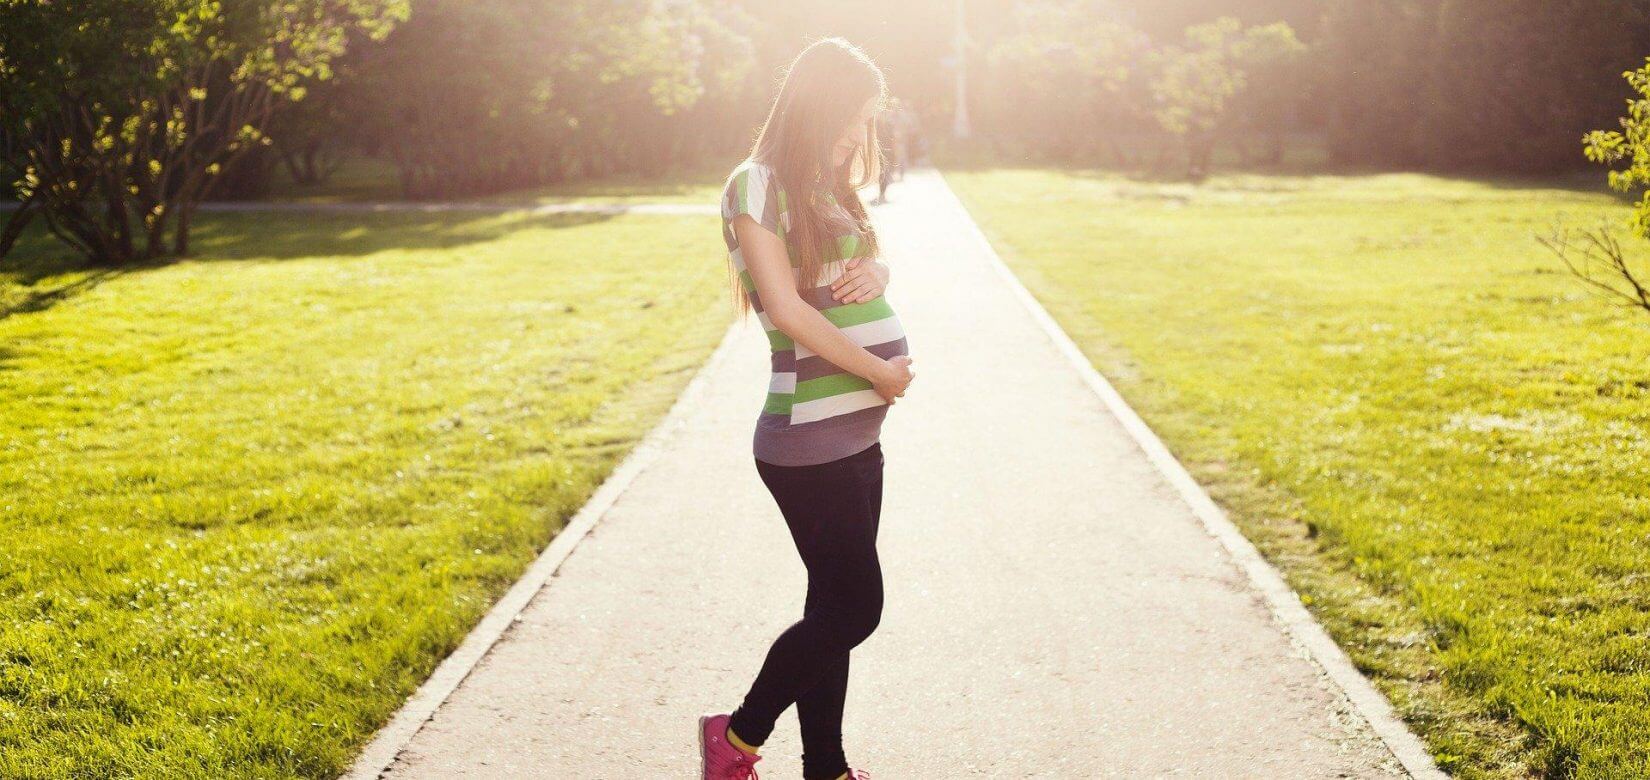 Γιατί πρέπει να κάνουν όλες οι γυναίκες το NIFTY στη διάρκεια της εγκυμοσύνης τους;